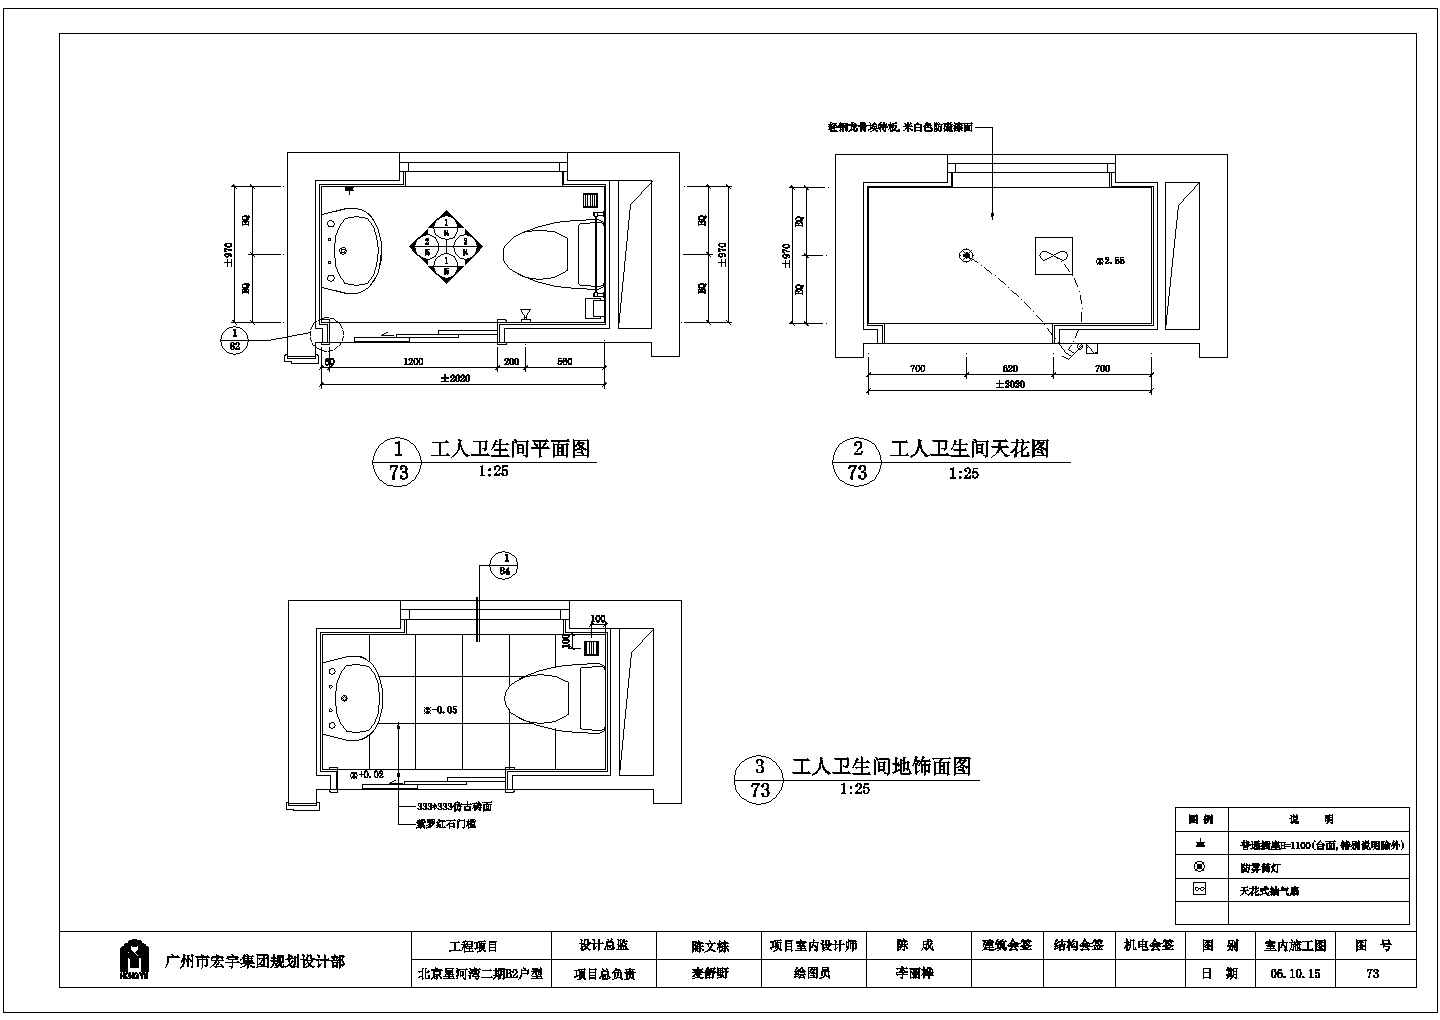 北京星河湾二期B2户型次卫详细建筑施工图